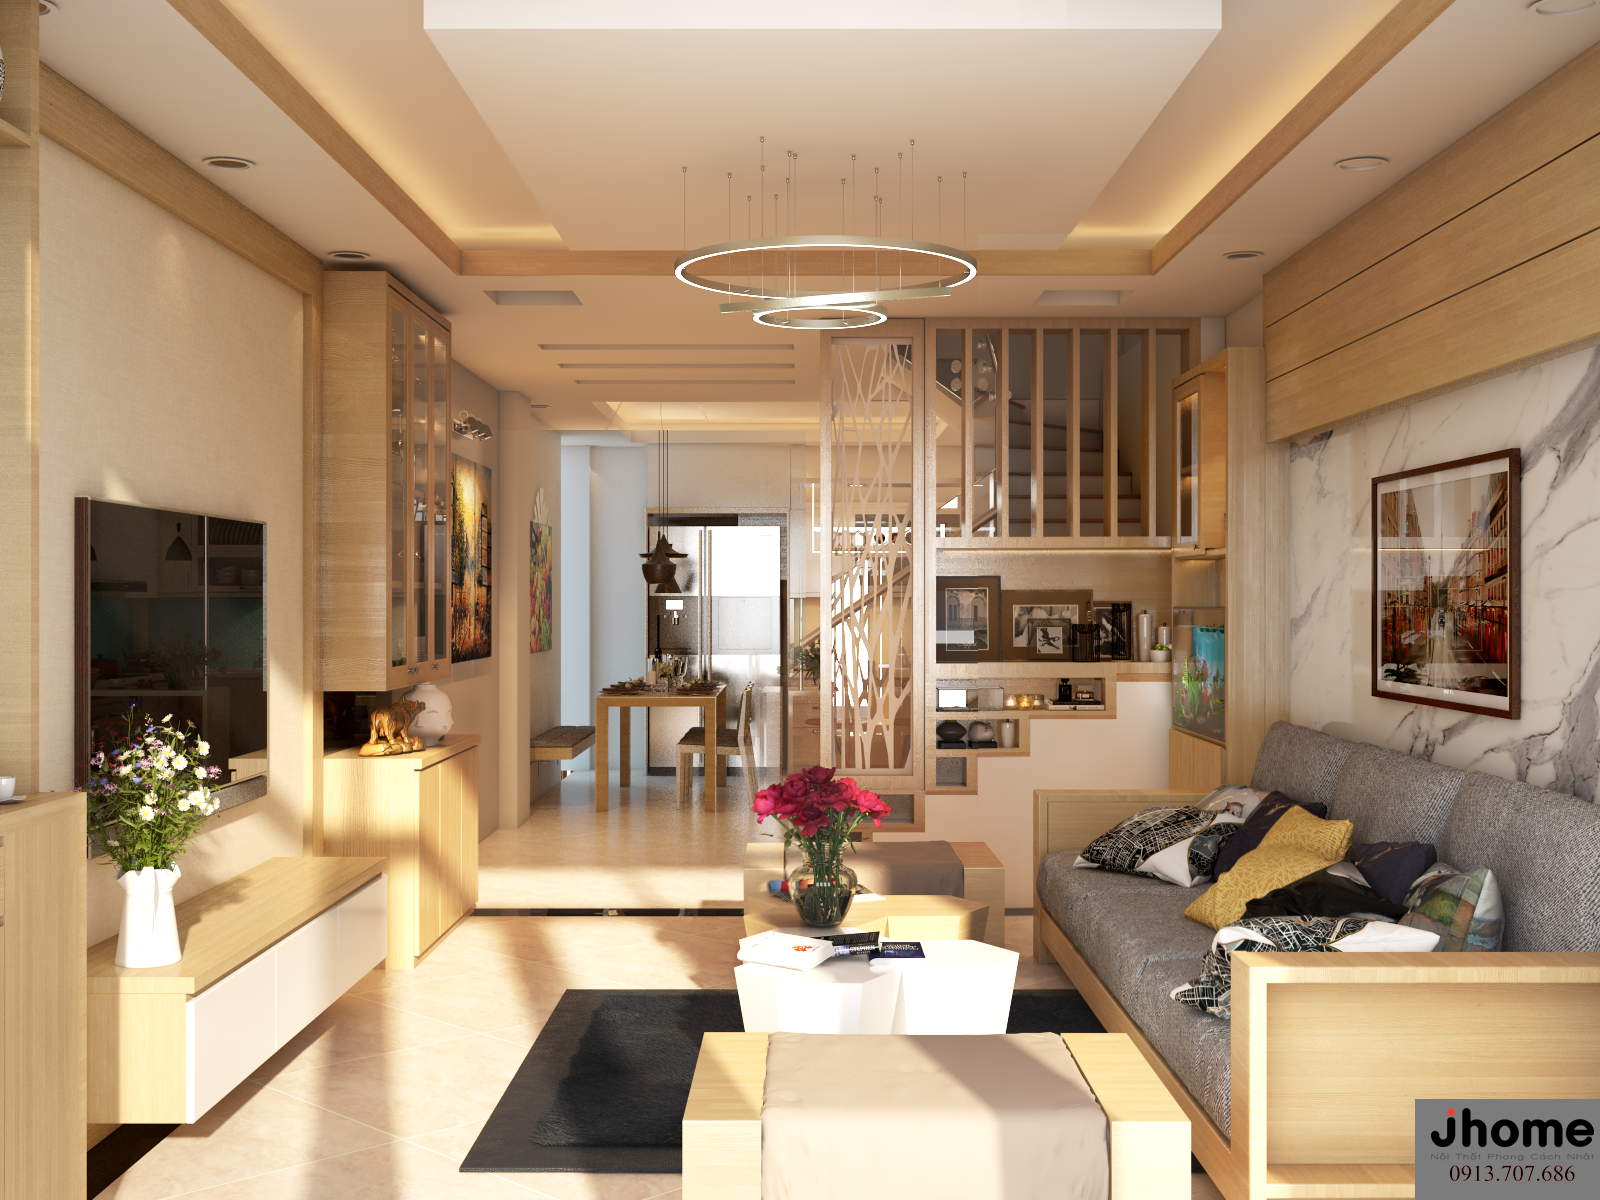 Thiết kế nội thất phòng khách đẹp tại Hà Nội sẽ đem lại cho bạn cảm giác thư giãn và gần gũi. Với sự pha trộn hoàn hảo giữa những gam màu ấm áp và thiết kế thông minh, không gian phòng khách sẽ trở thành một nơi lý tưởng để tận hưởng cuộc sống với gia đình và bạn bè.